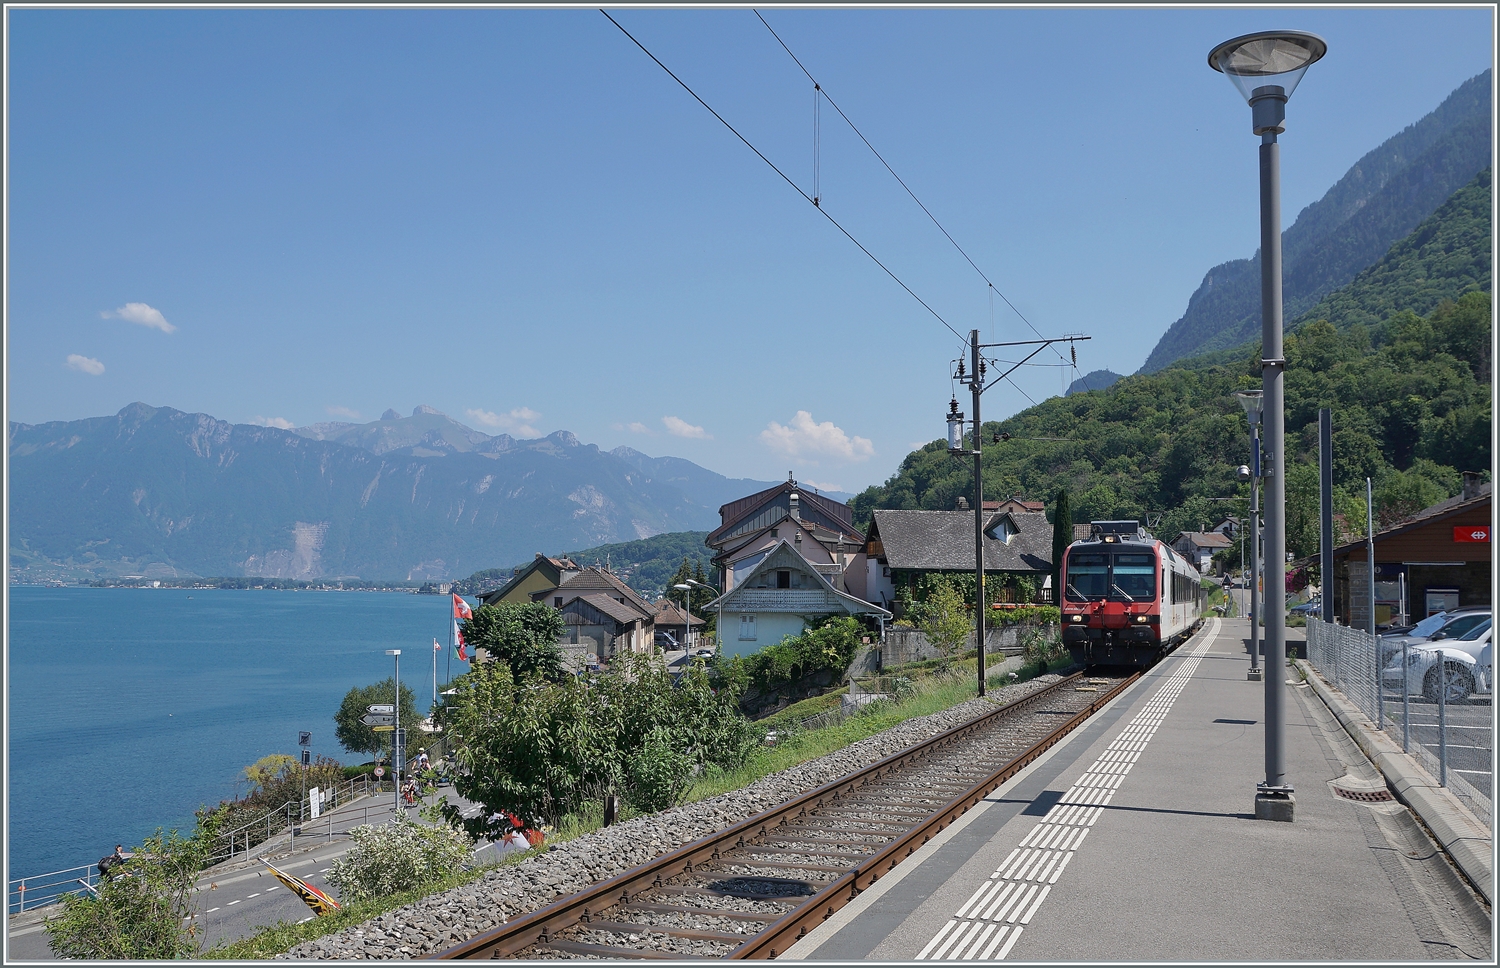 Ein Region Alps Domino erreicht als Regionalzug von Brig kommend sein Ziel St-Gingolph.

22. Juli 2022